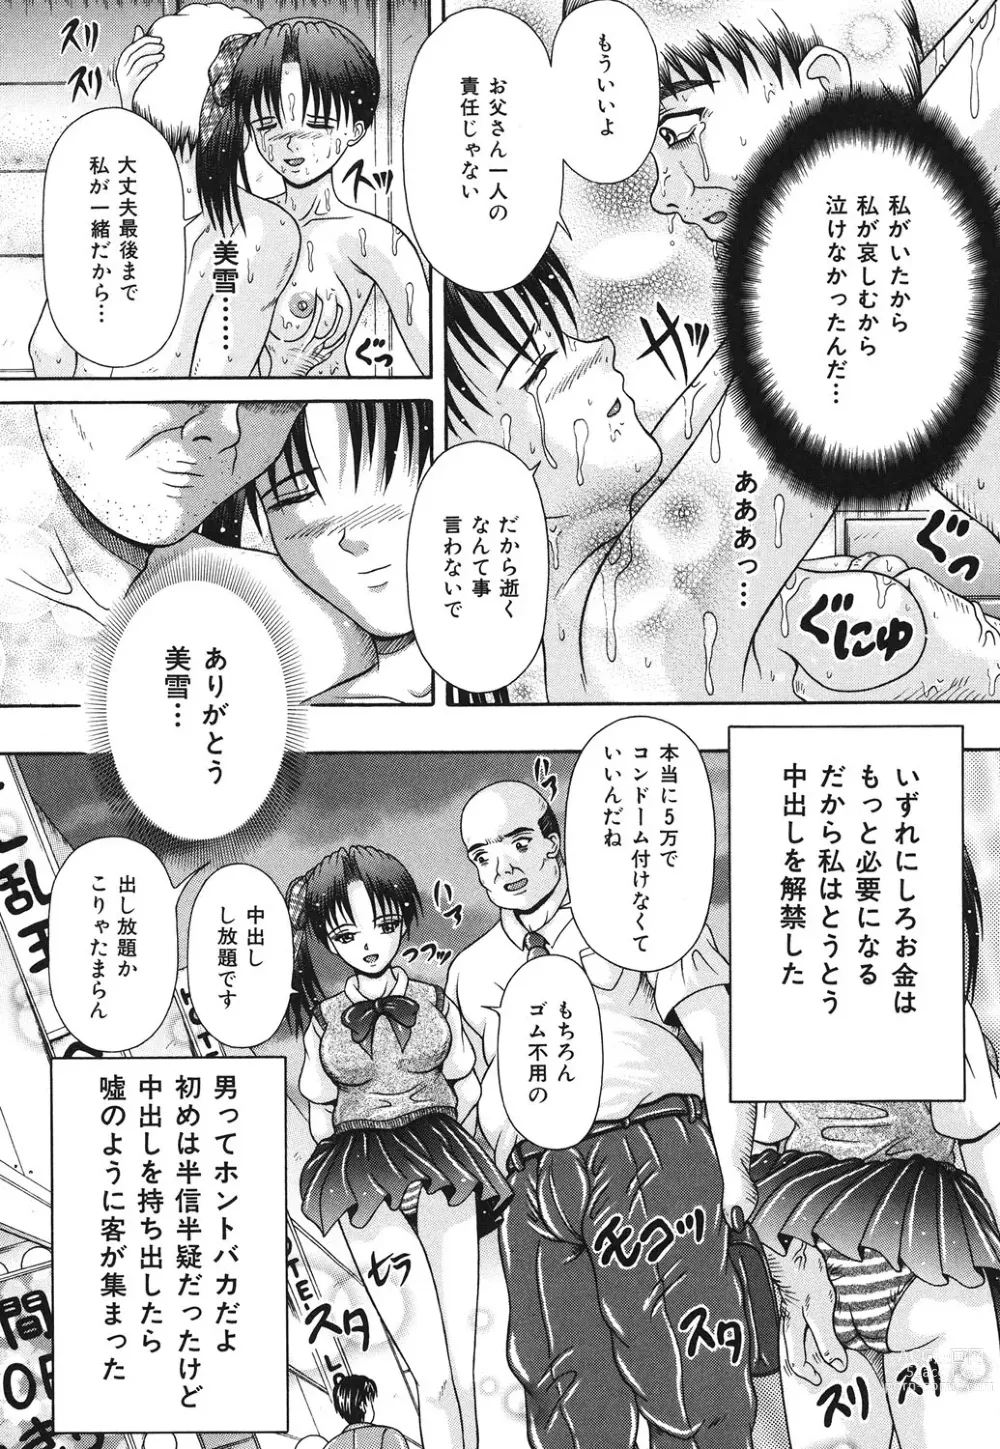 Page 141 of manga Todokanai Zekkyou - Nicht Erreichen Schreien